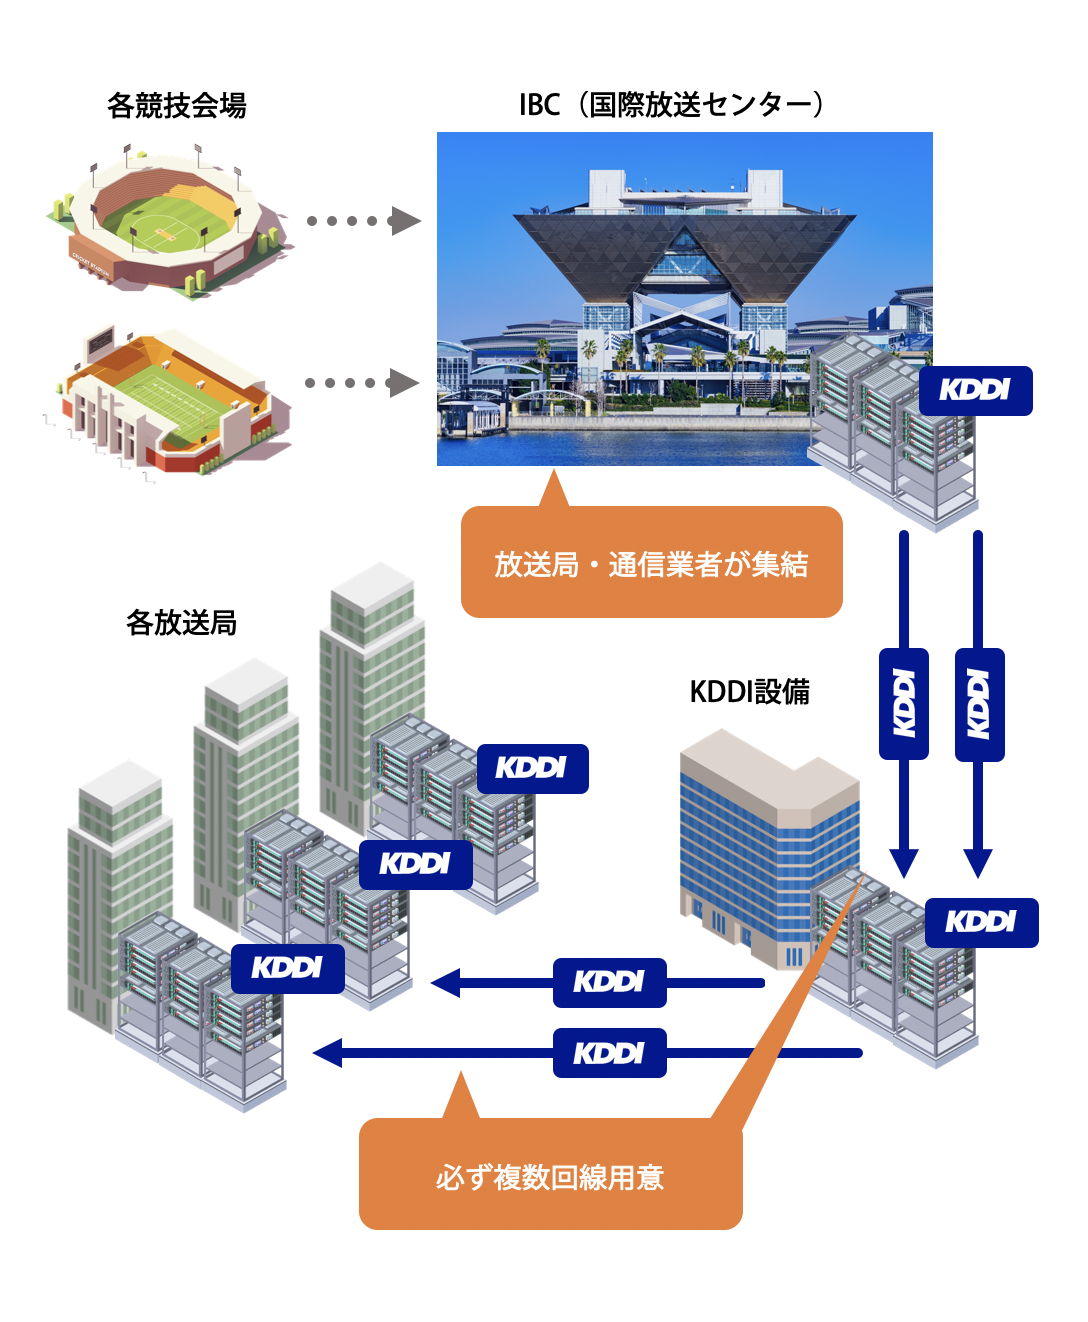 スポーツの国際大会用に設置された映像伝送用の専用回線の概念図